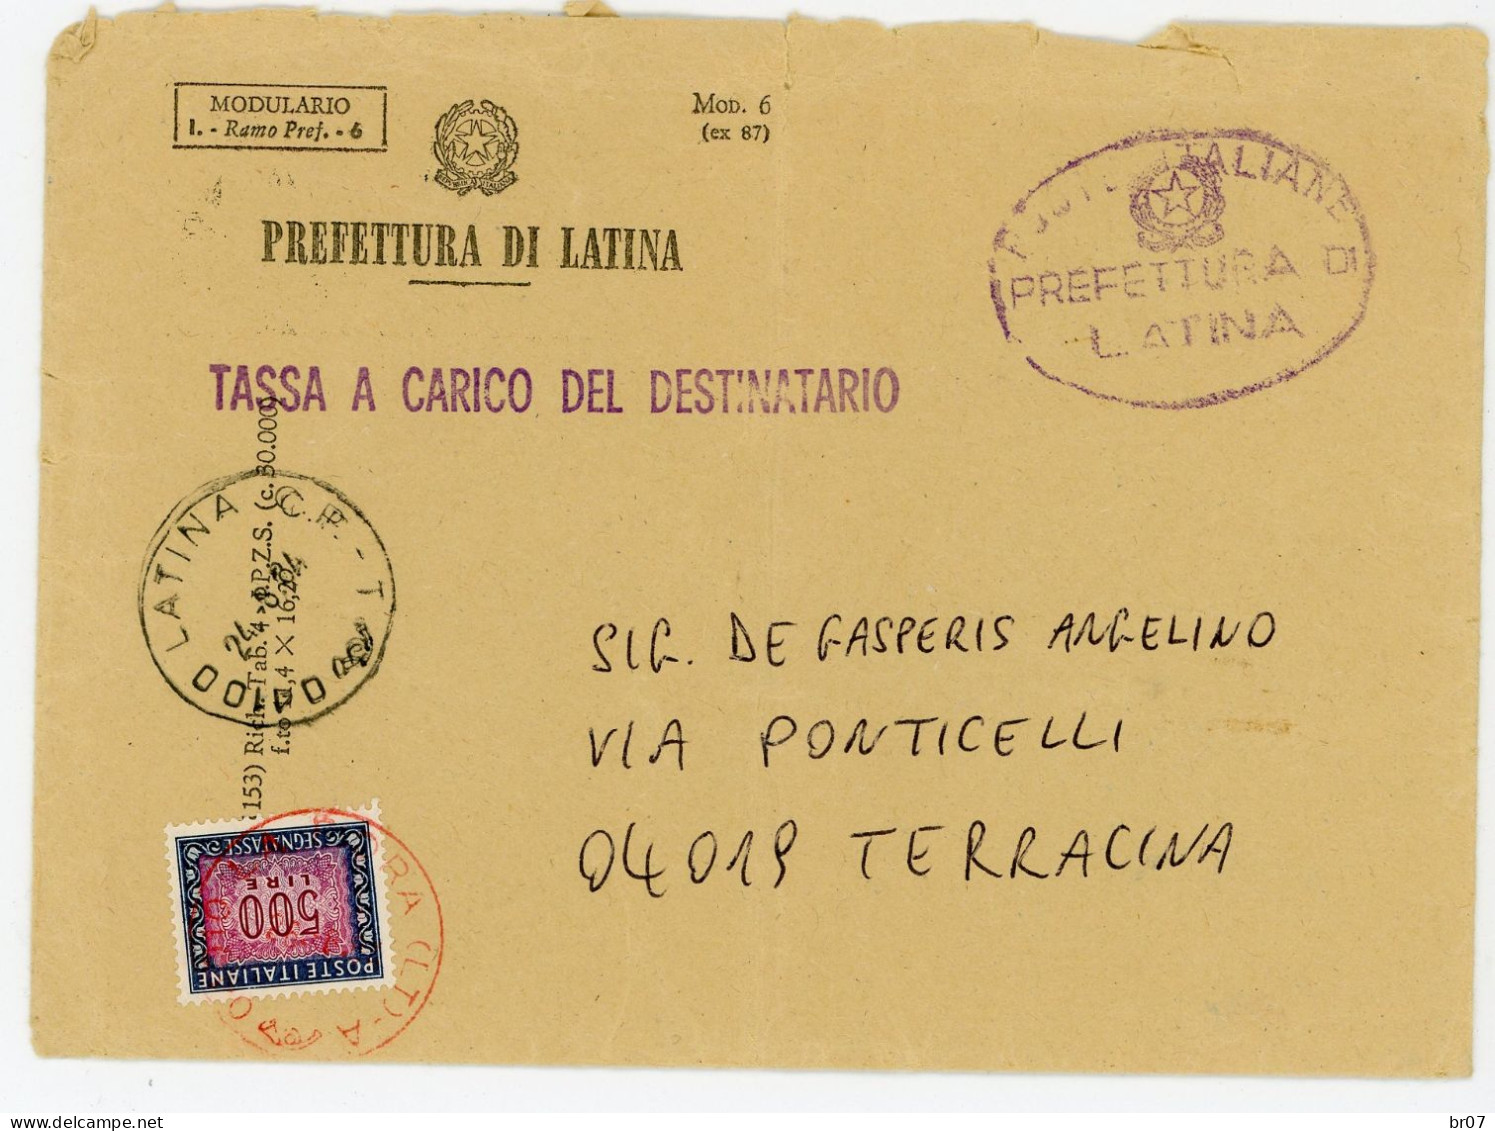 ITALIE ENV 1984 PREFETTURA DI LATINA TAXE A CHARGE DU DESTINATAIRE 500 LIRES TERRACINA TASSA A CARICO DEL DESTINATARIO - 1981-90: Marcophilie